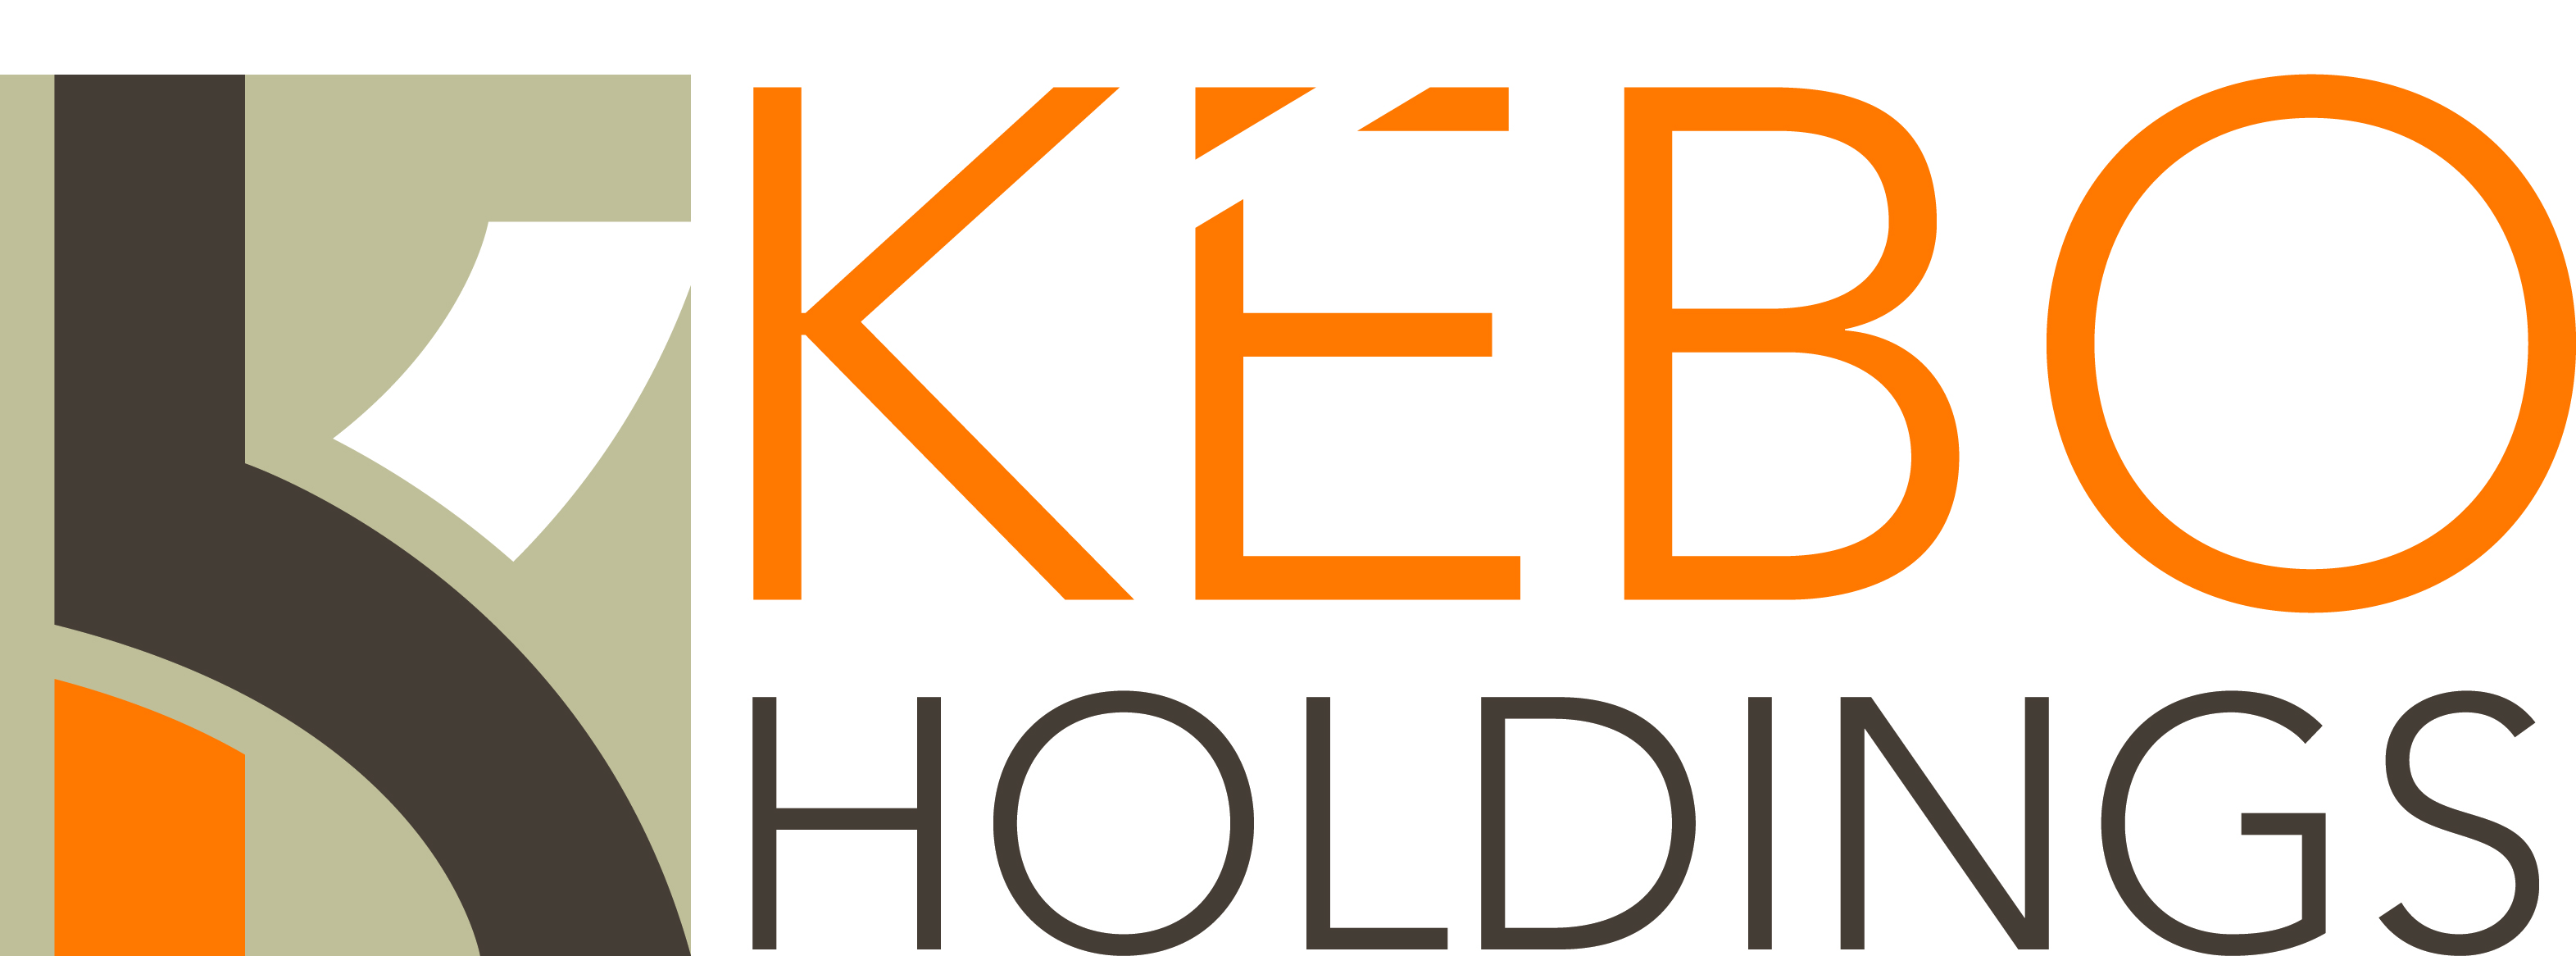 Kebo Holdings (Unverified) logo